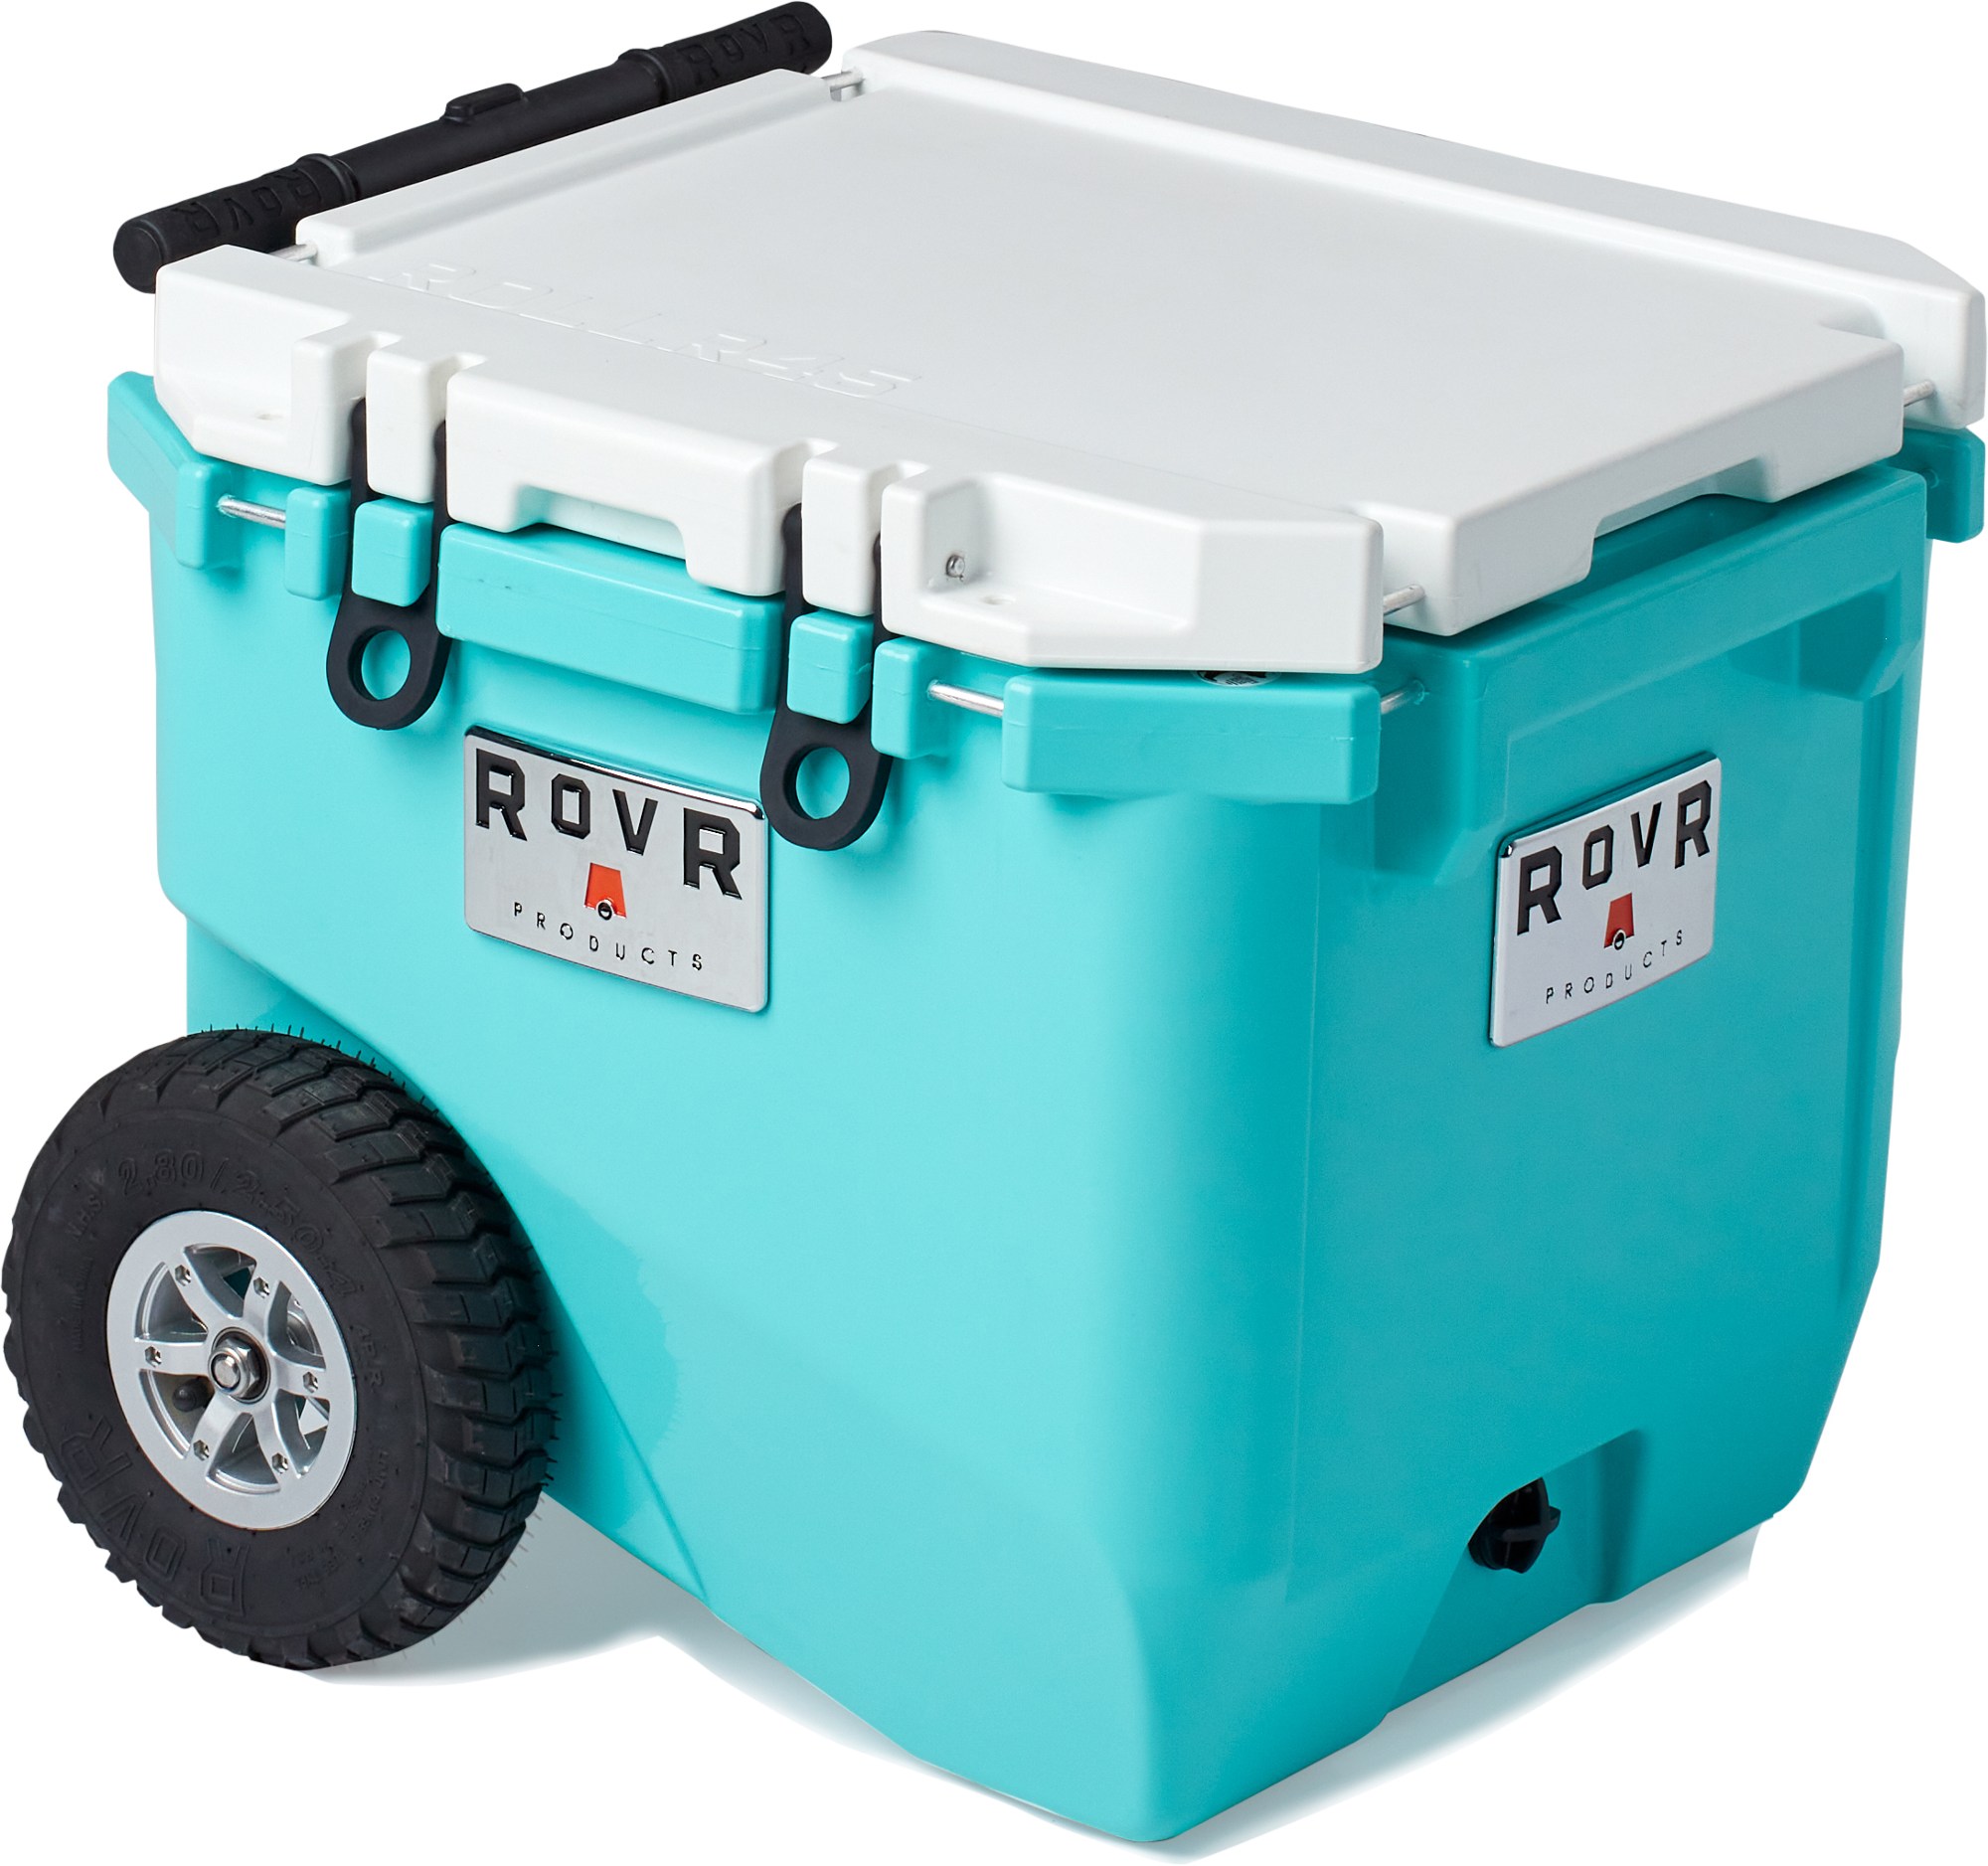 RollR 45 Колесный охладитель RovR Products, синий